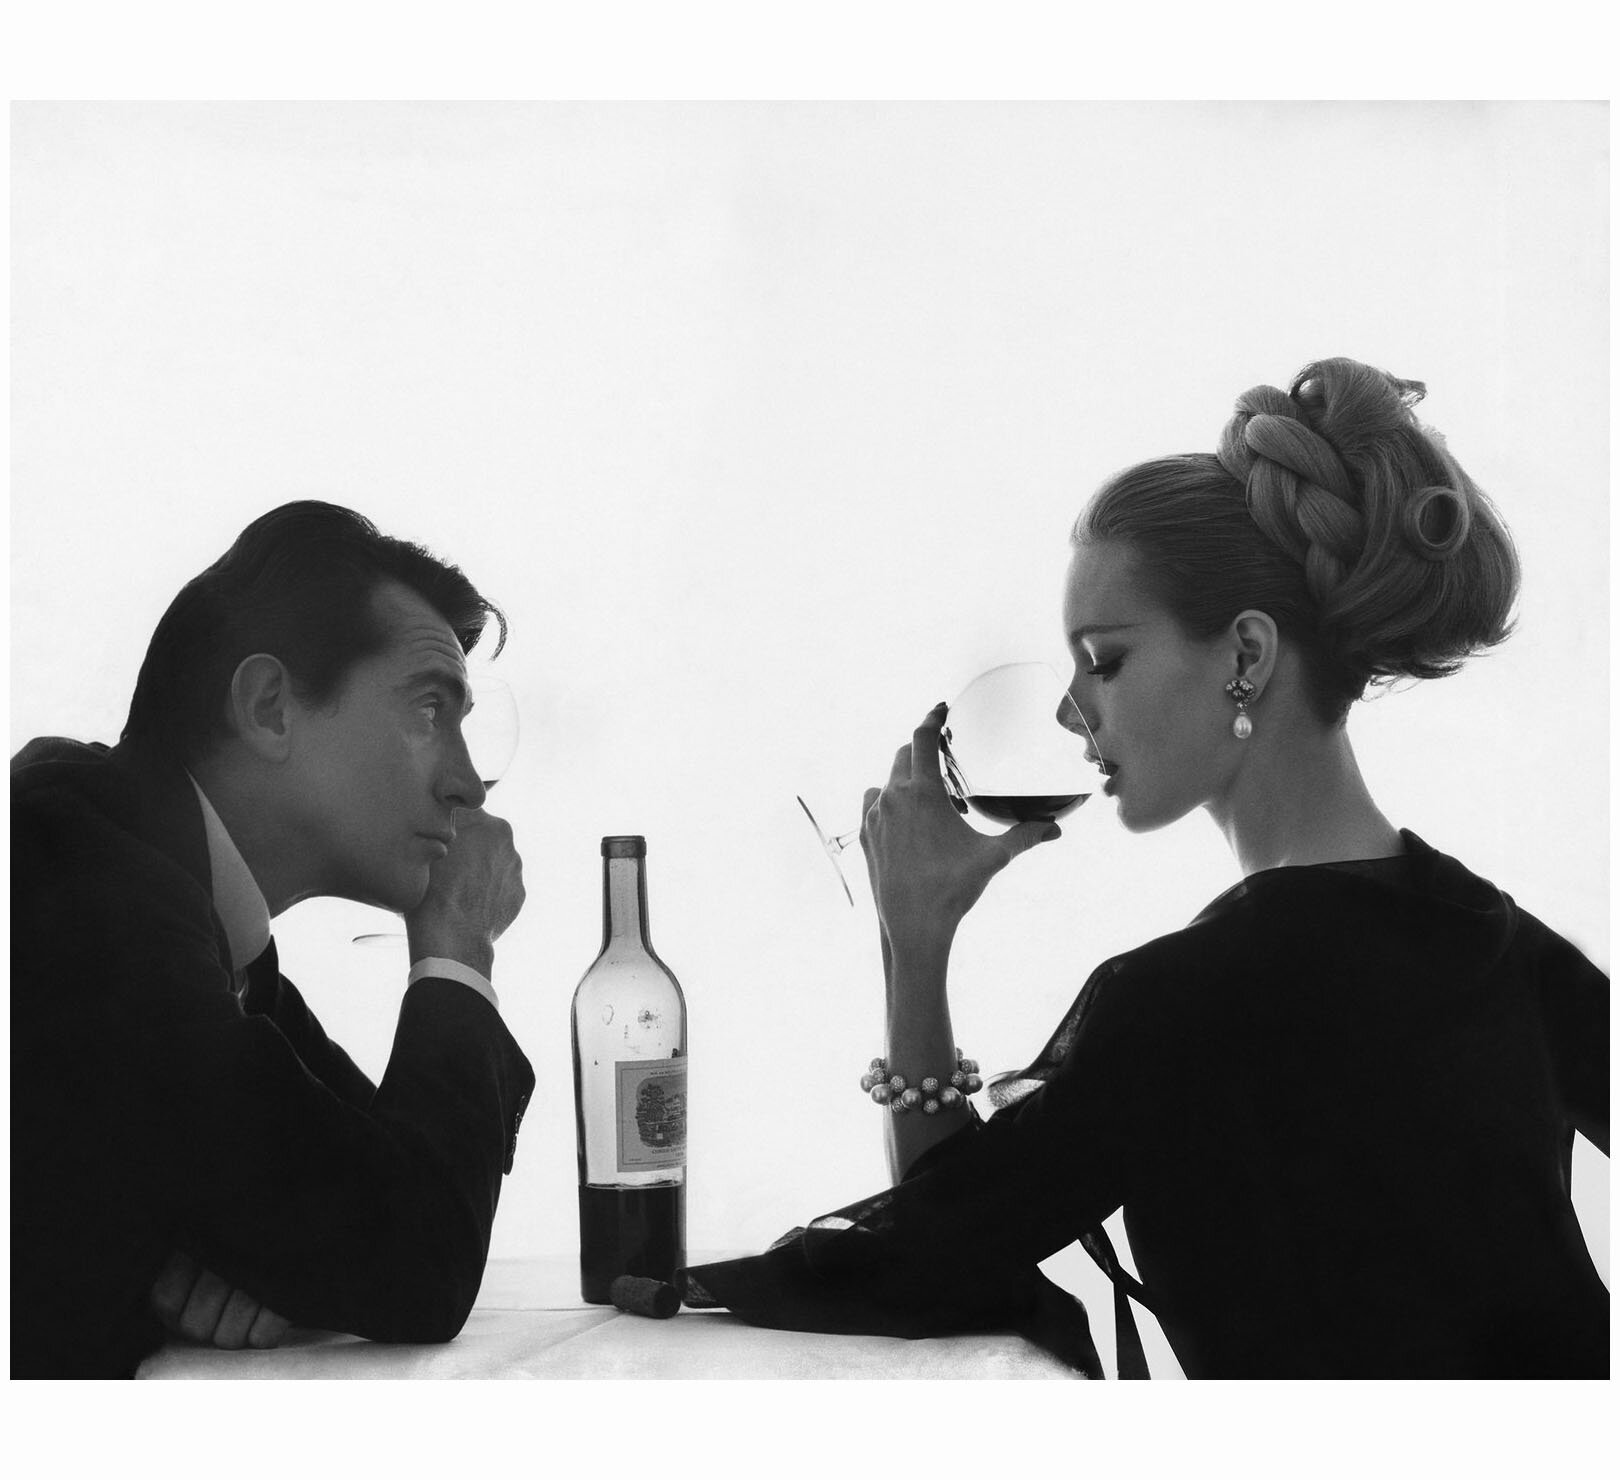 Walter Chiari & Monique Chevalier
Par Bert Stern pour Vogue | Avril 1962v